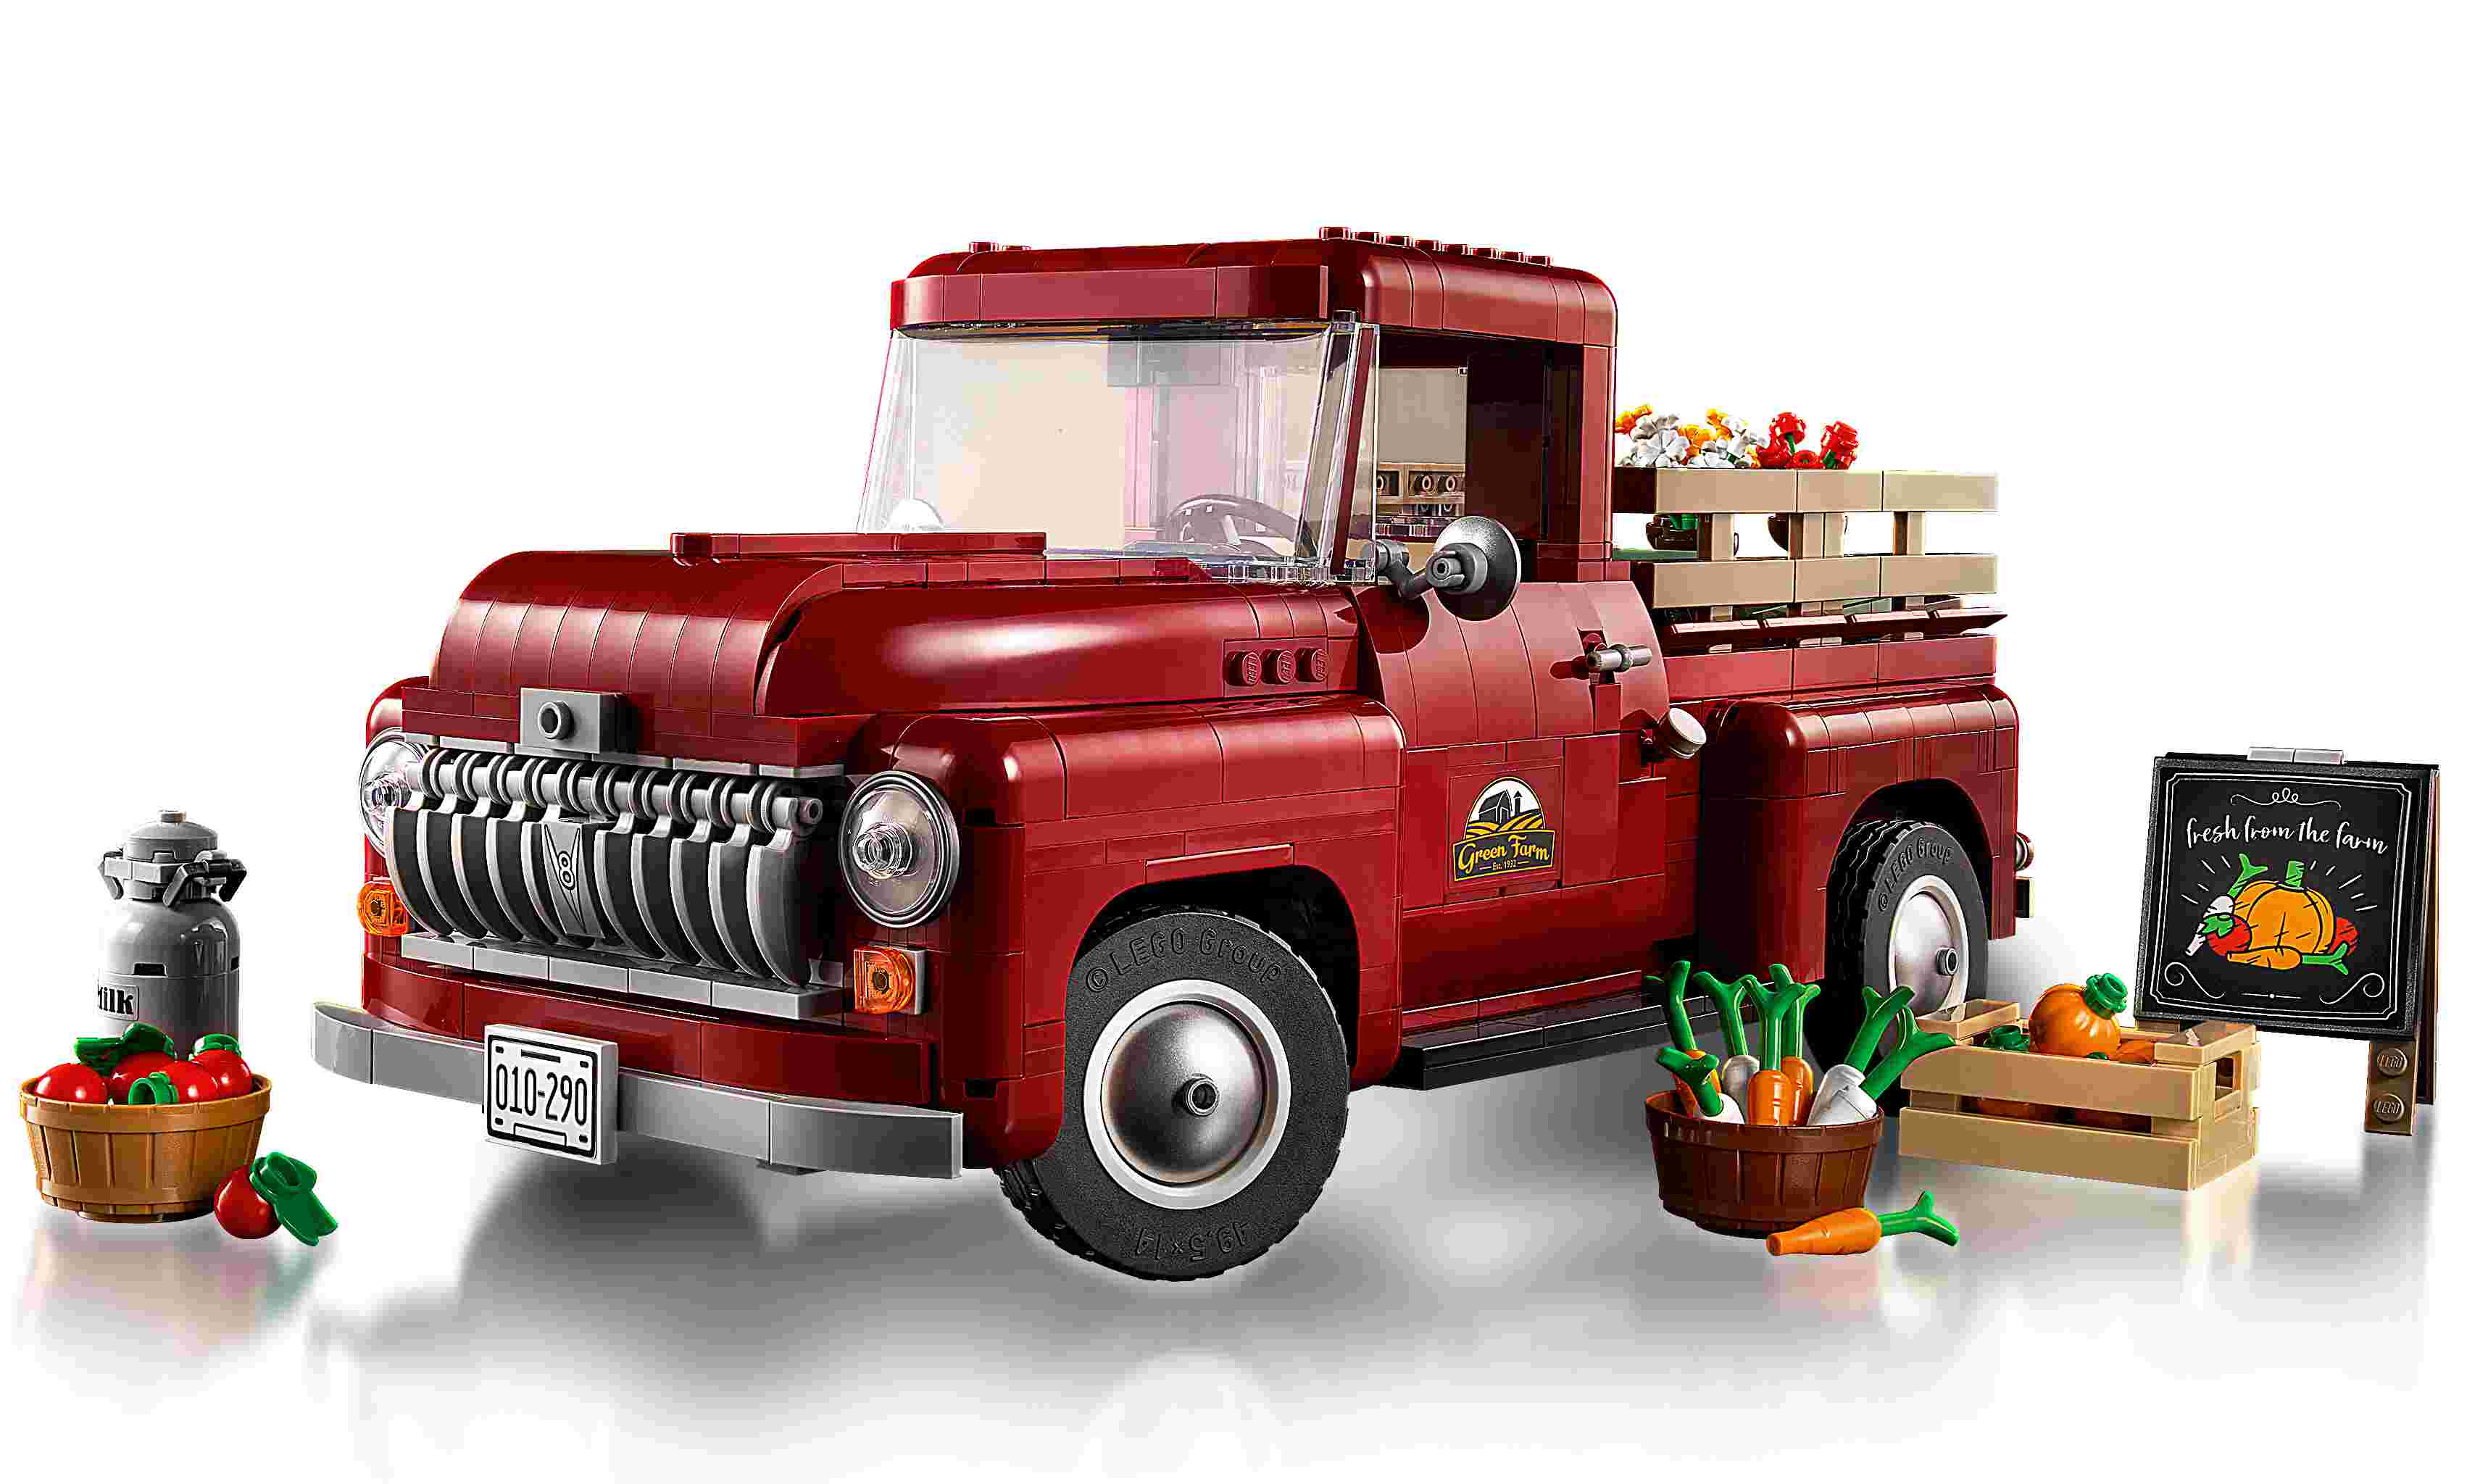 LEGO 10290 Icons Pickup, Sammlermodell, authentische Pickup-Merkmale